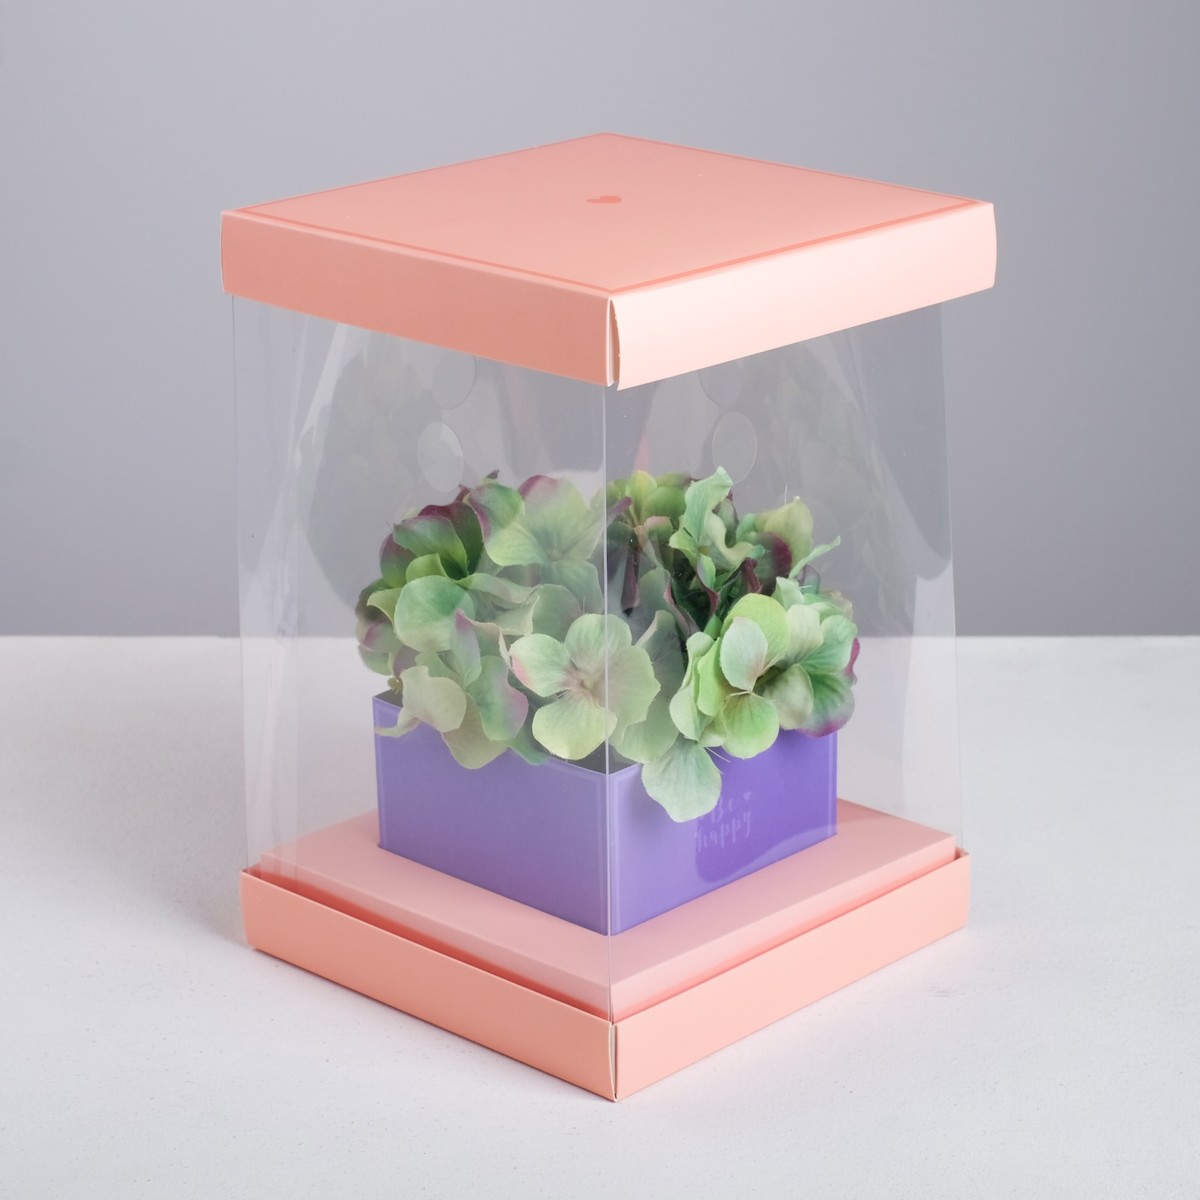 Коробка подарочная для цветов с вазой и pvc окнами складная, упаковка, коробка для ов с вазой и pvc окнами складная 23 х 30 х 23 см